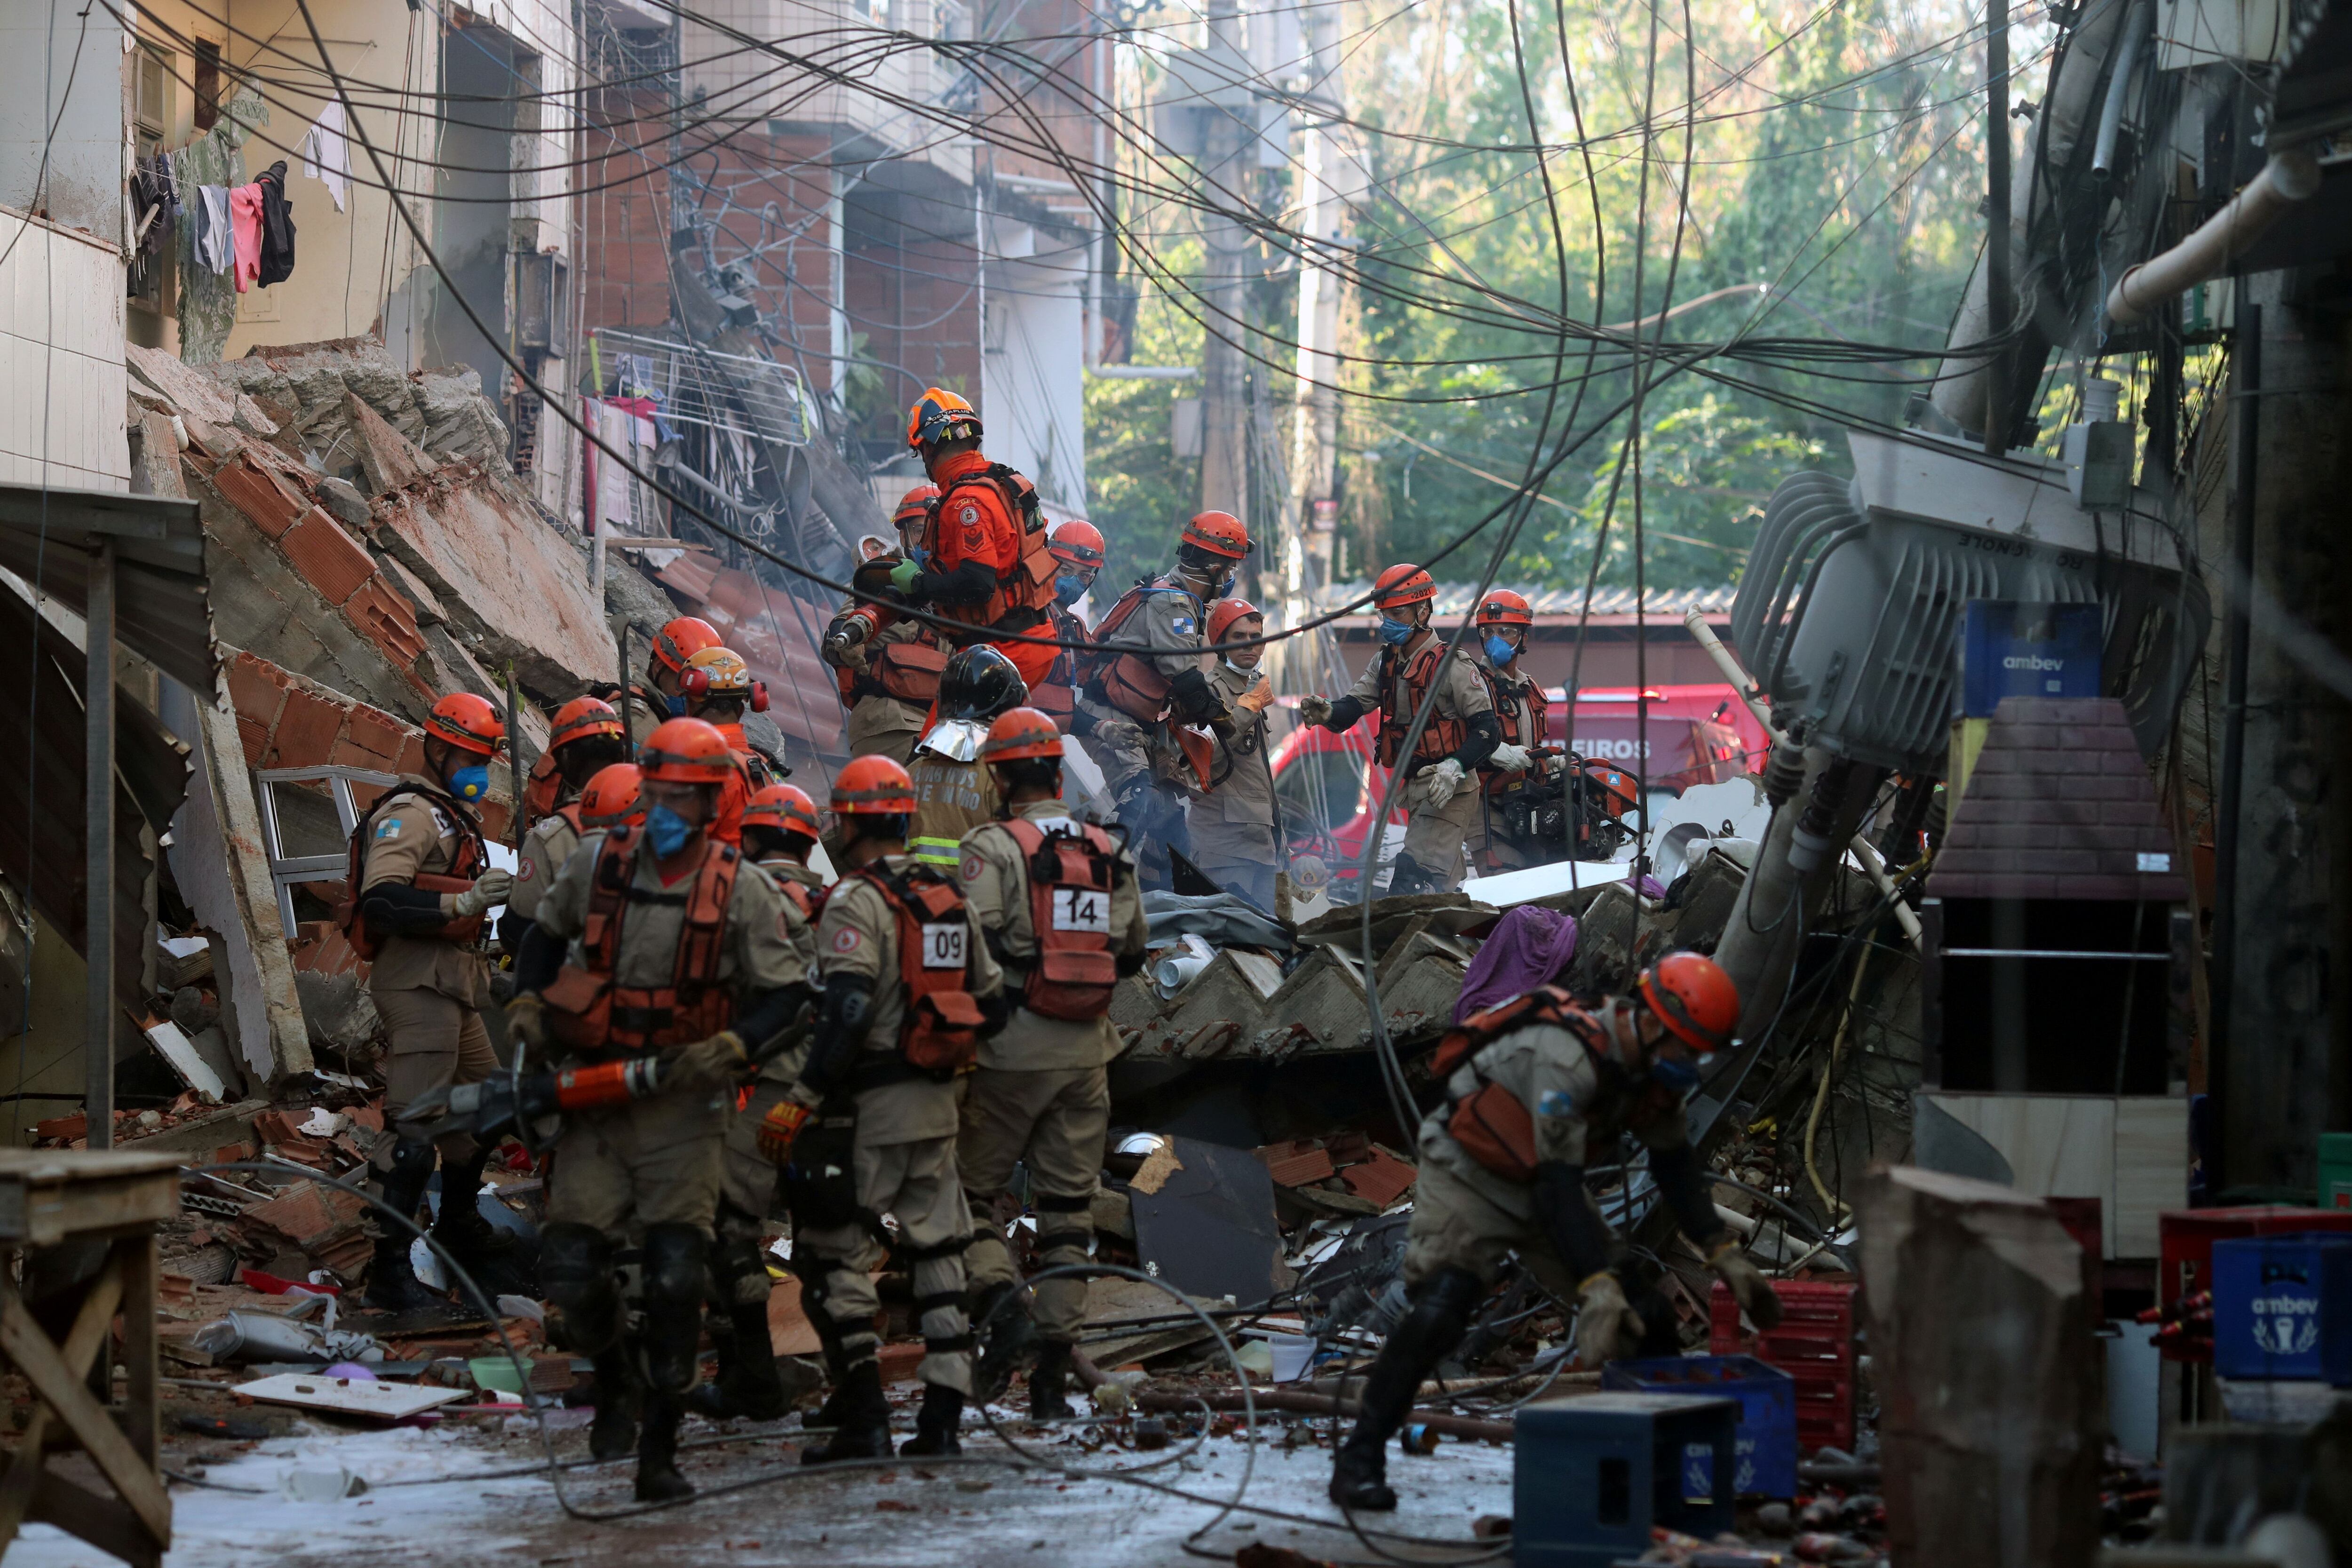 Bombeiros tentam resgatar outras pessoas presas aos escombros após desabamento de prédio de quatro andares no Rio.